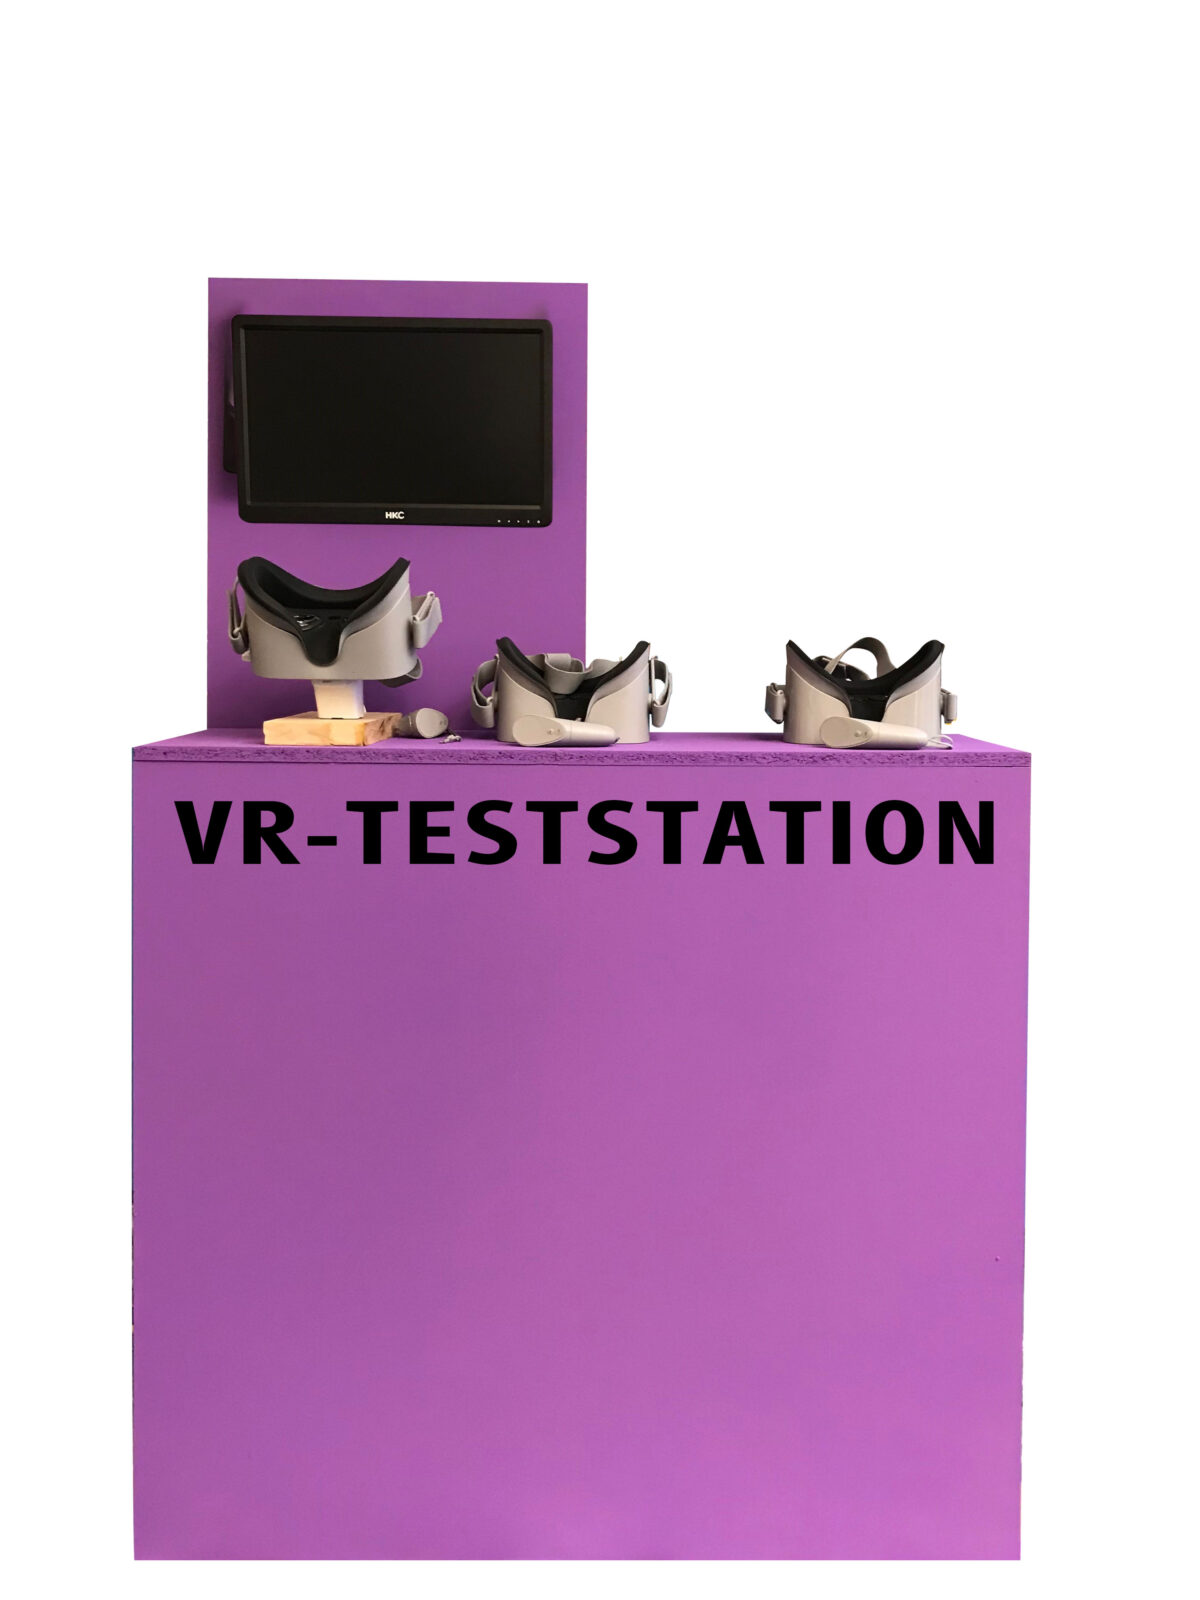 Frontansicht der ersten VR-Station, welche als Teststation verwendet wurde